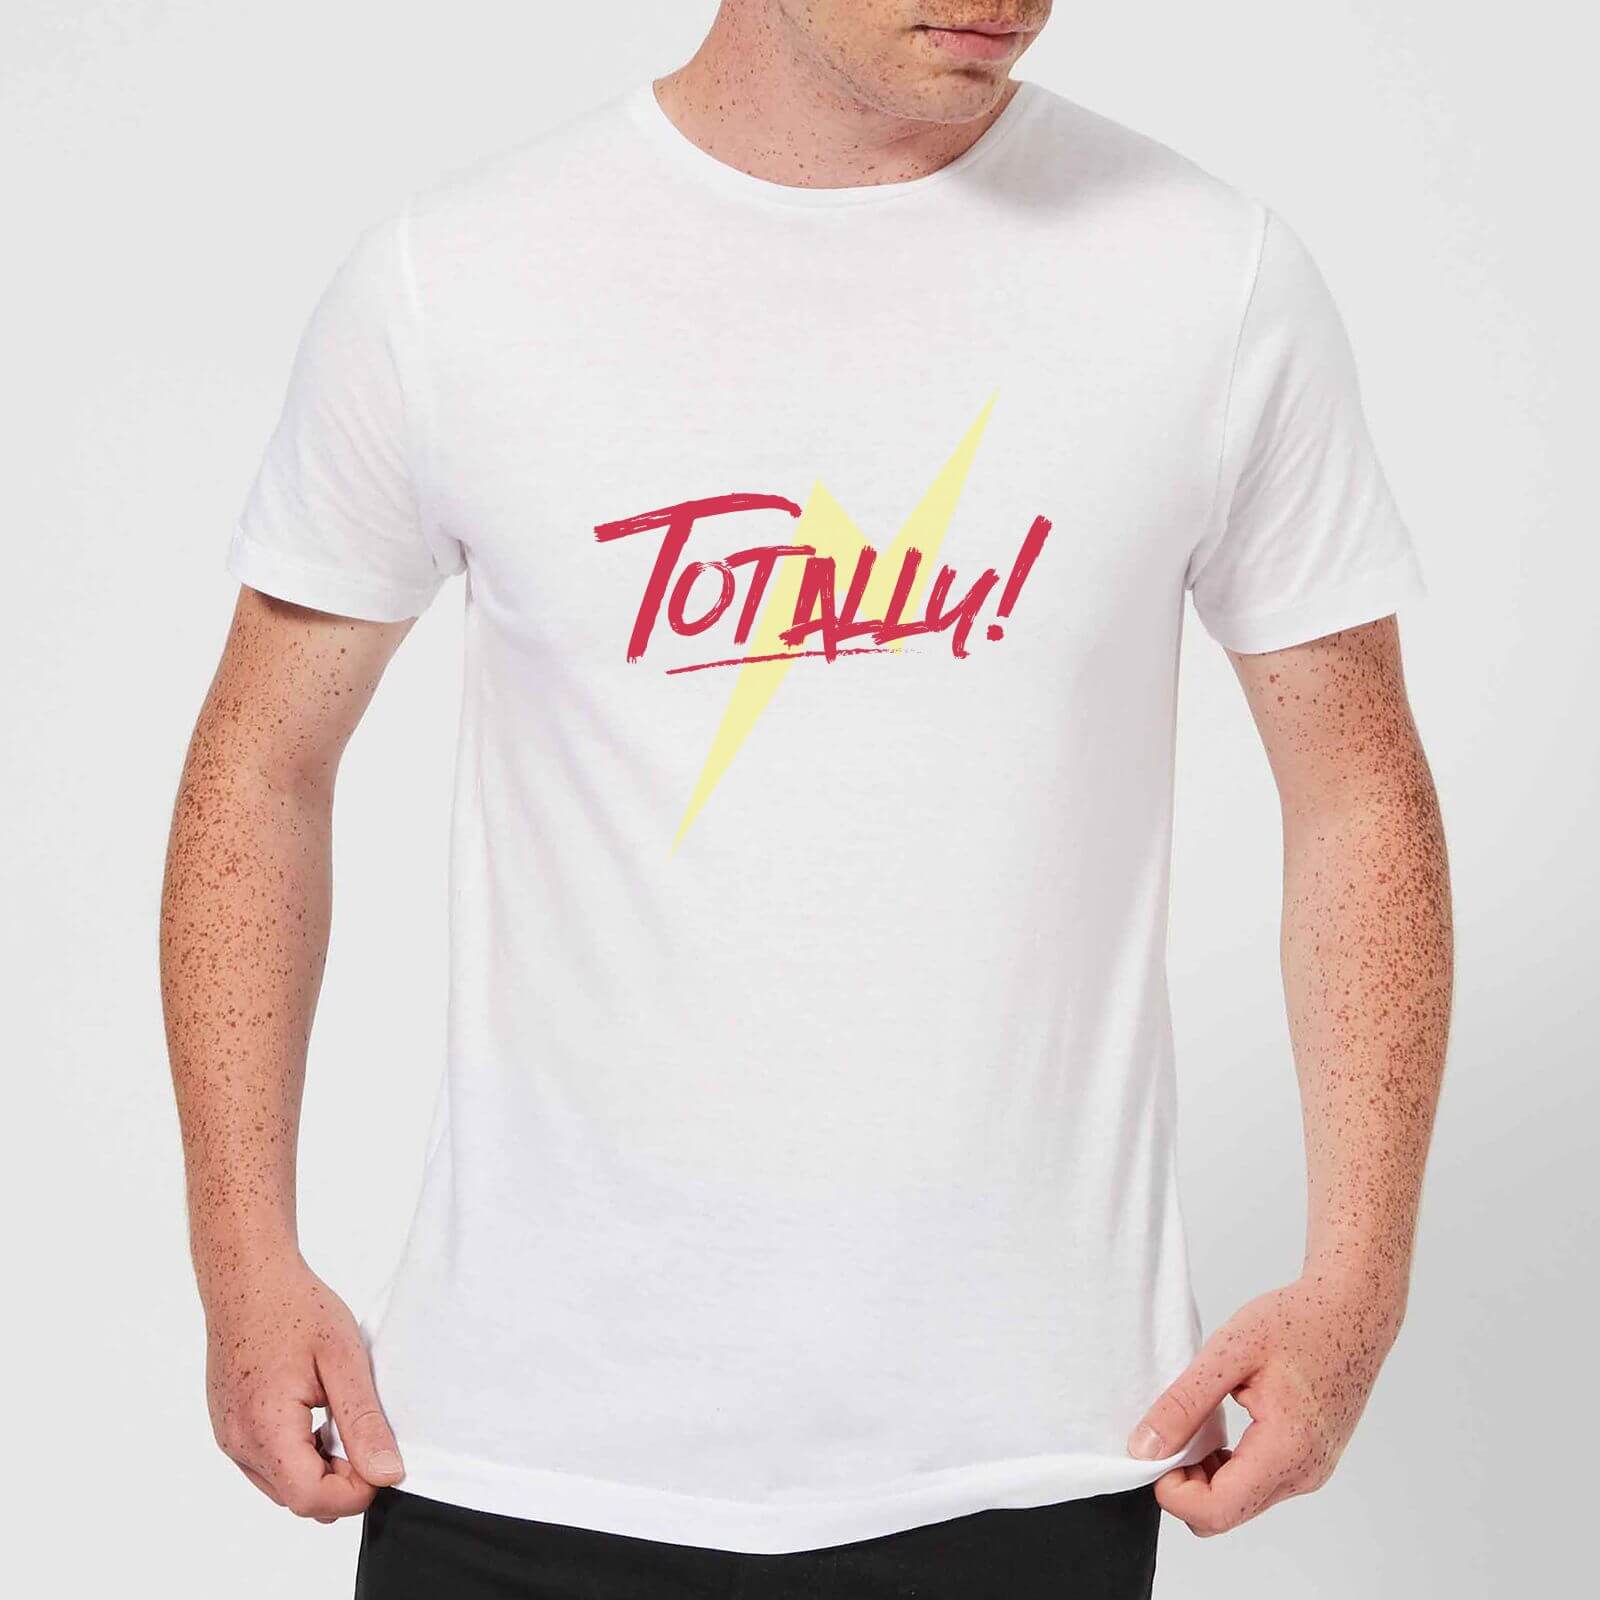 Lightning Bolt Totally! Men's T-Shirt - White - S - White